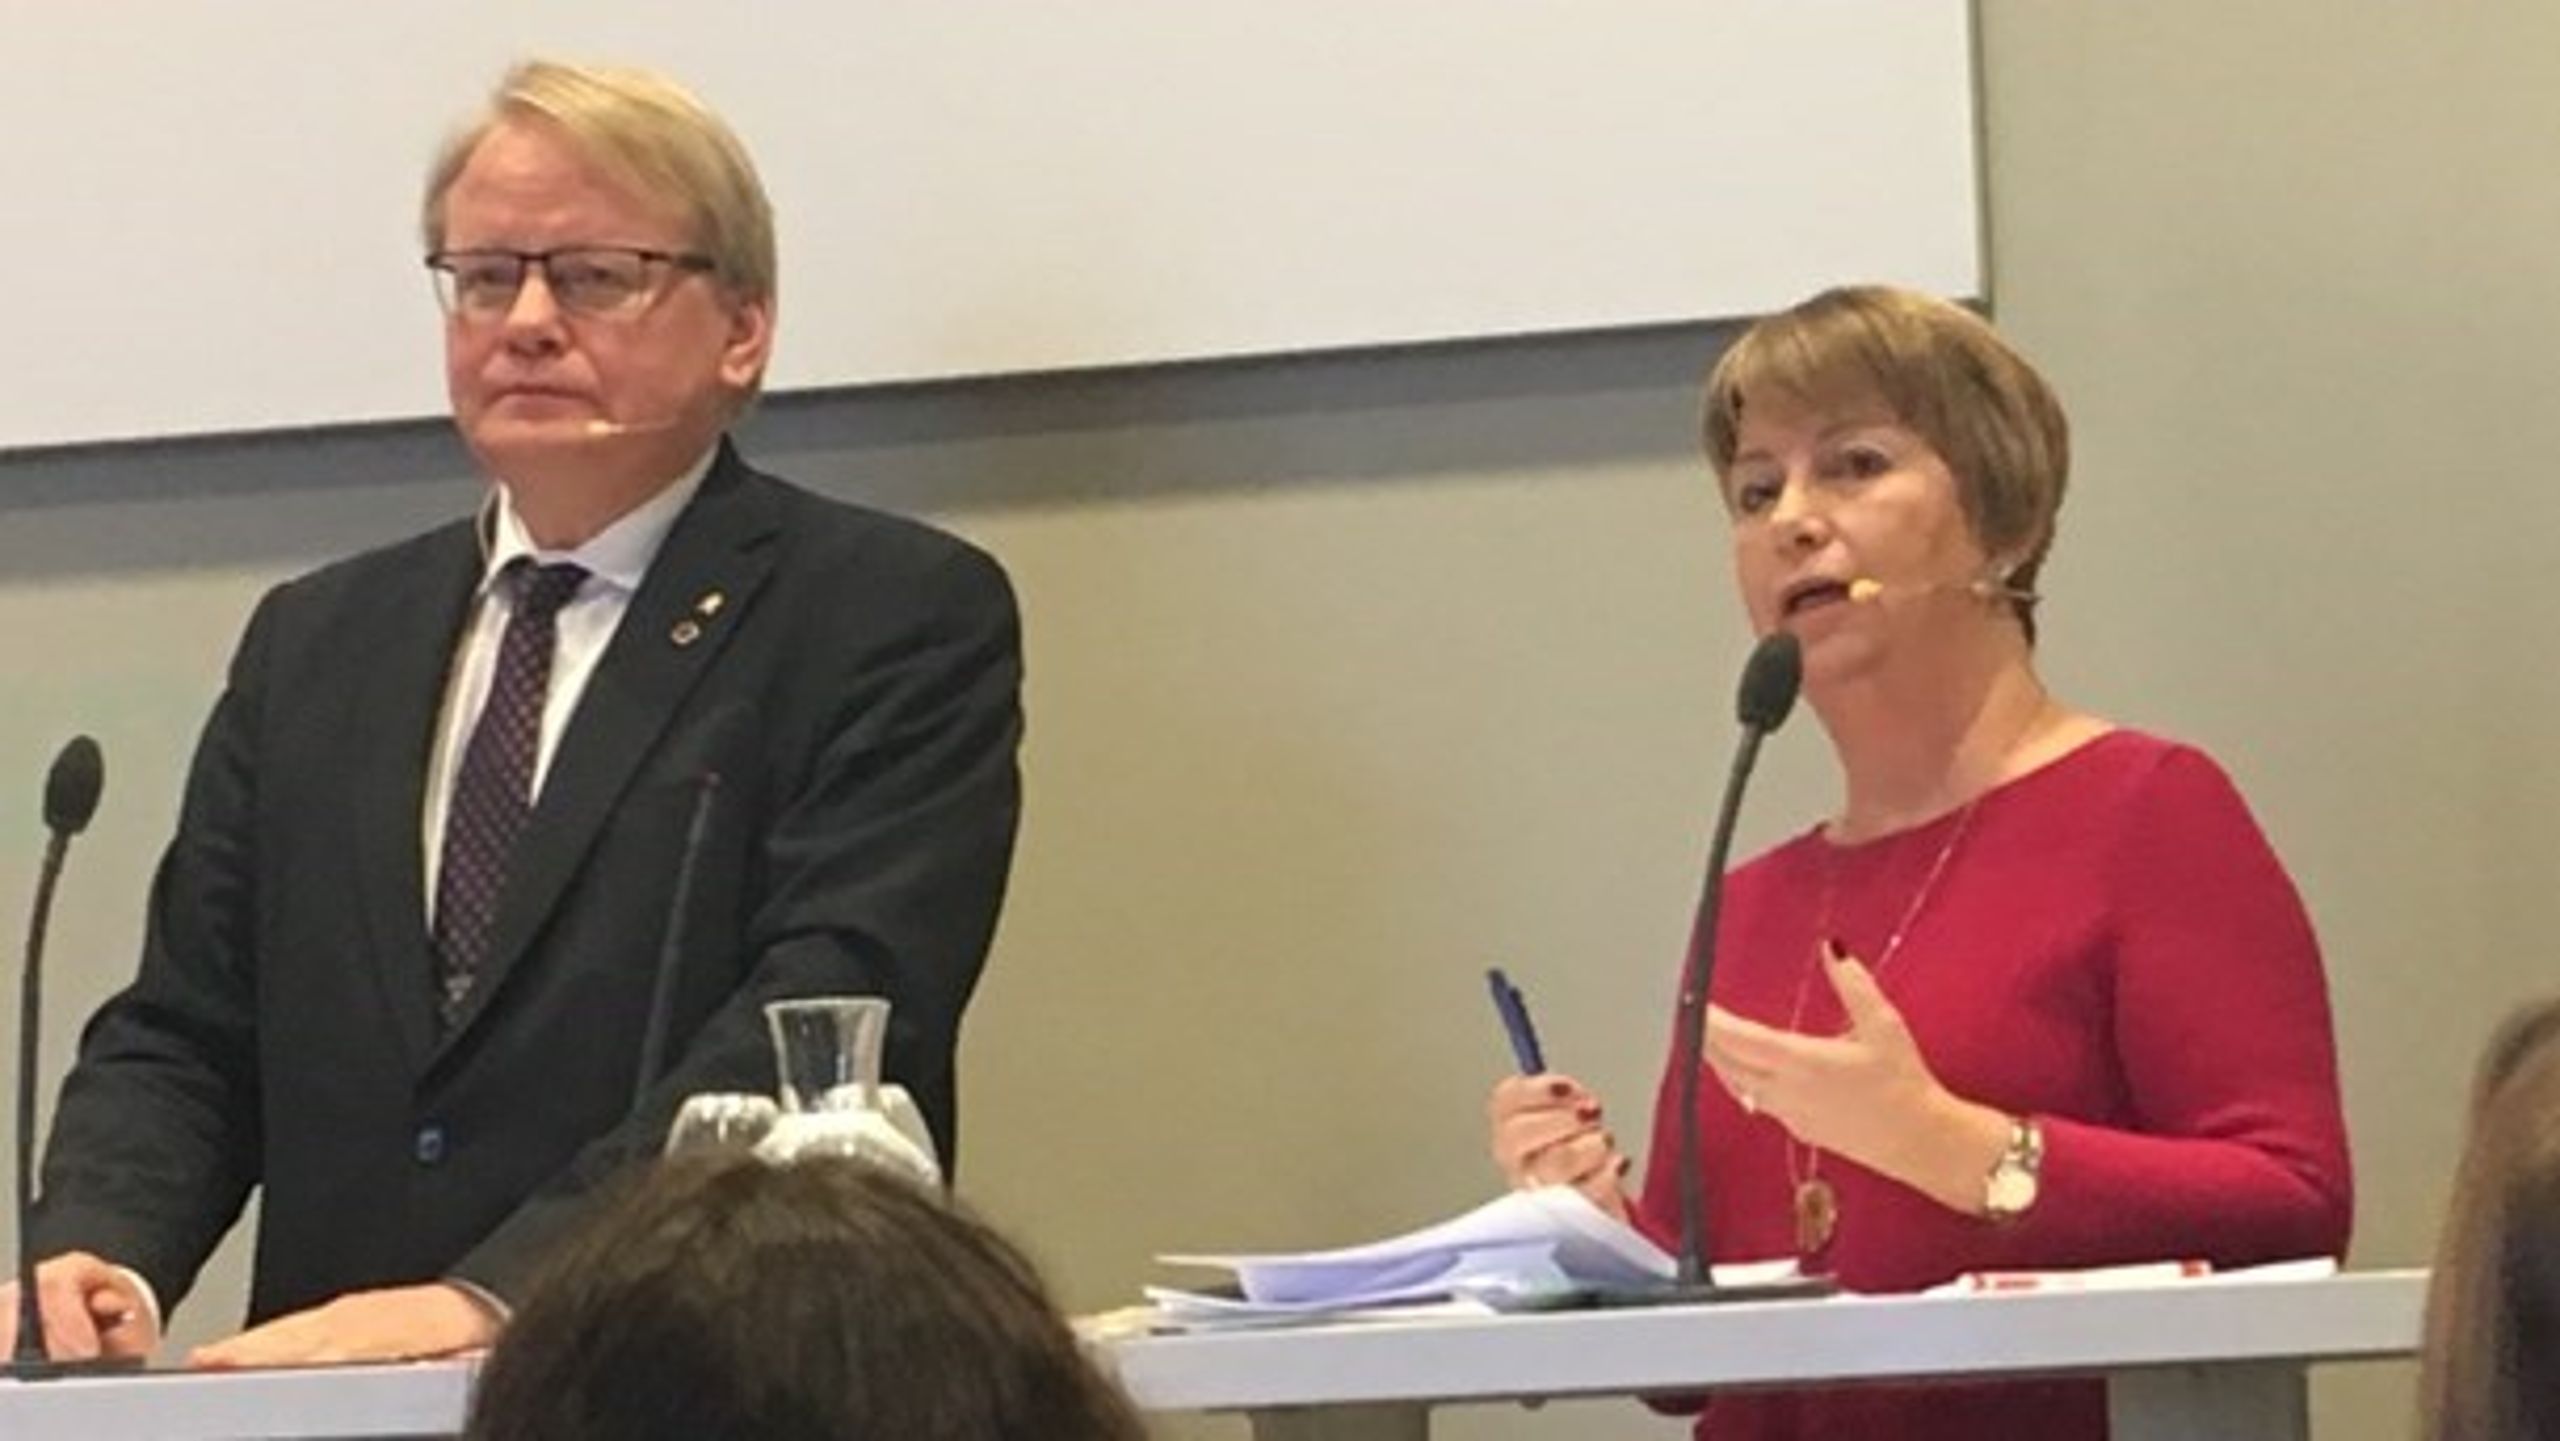 Sveriges forsvarsminister Peter Hultqvist (tv.) og Ann-Sofie Dahl ved konference i Stockholm.